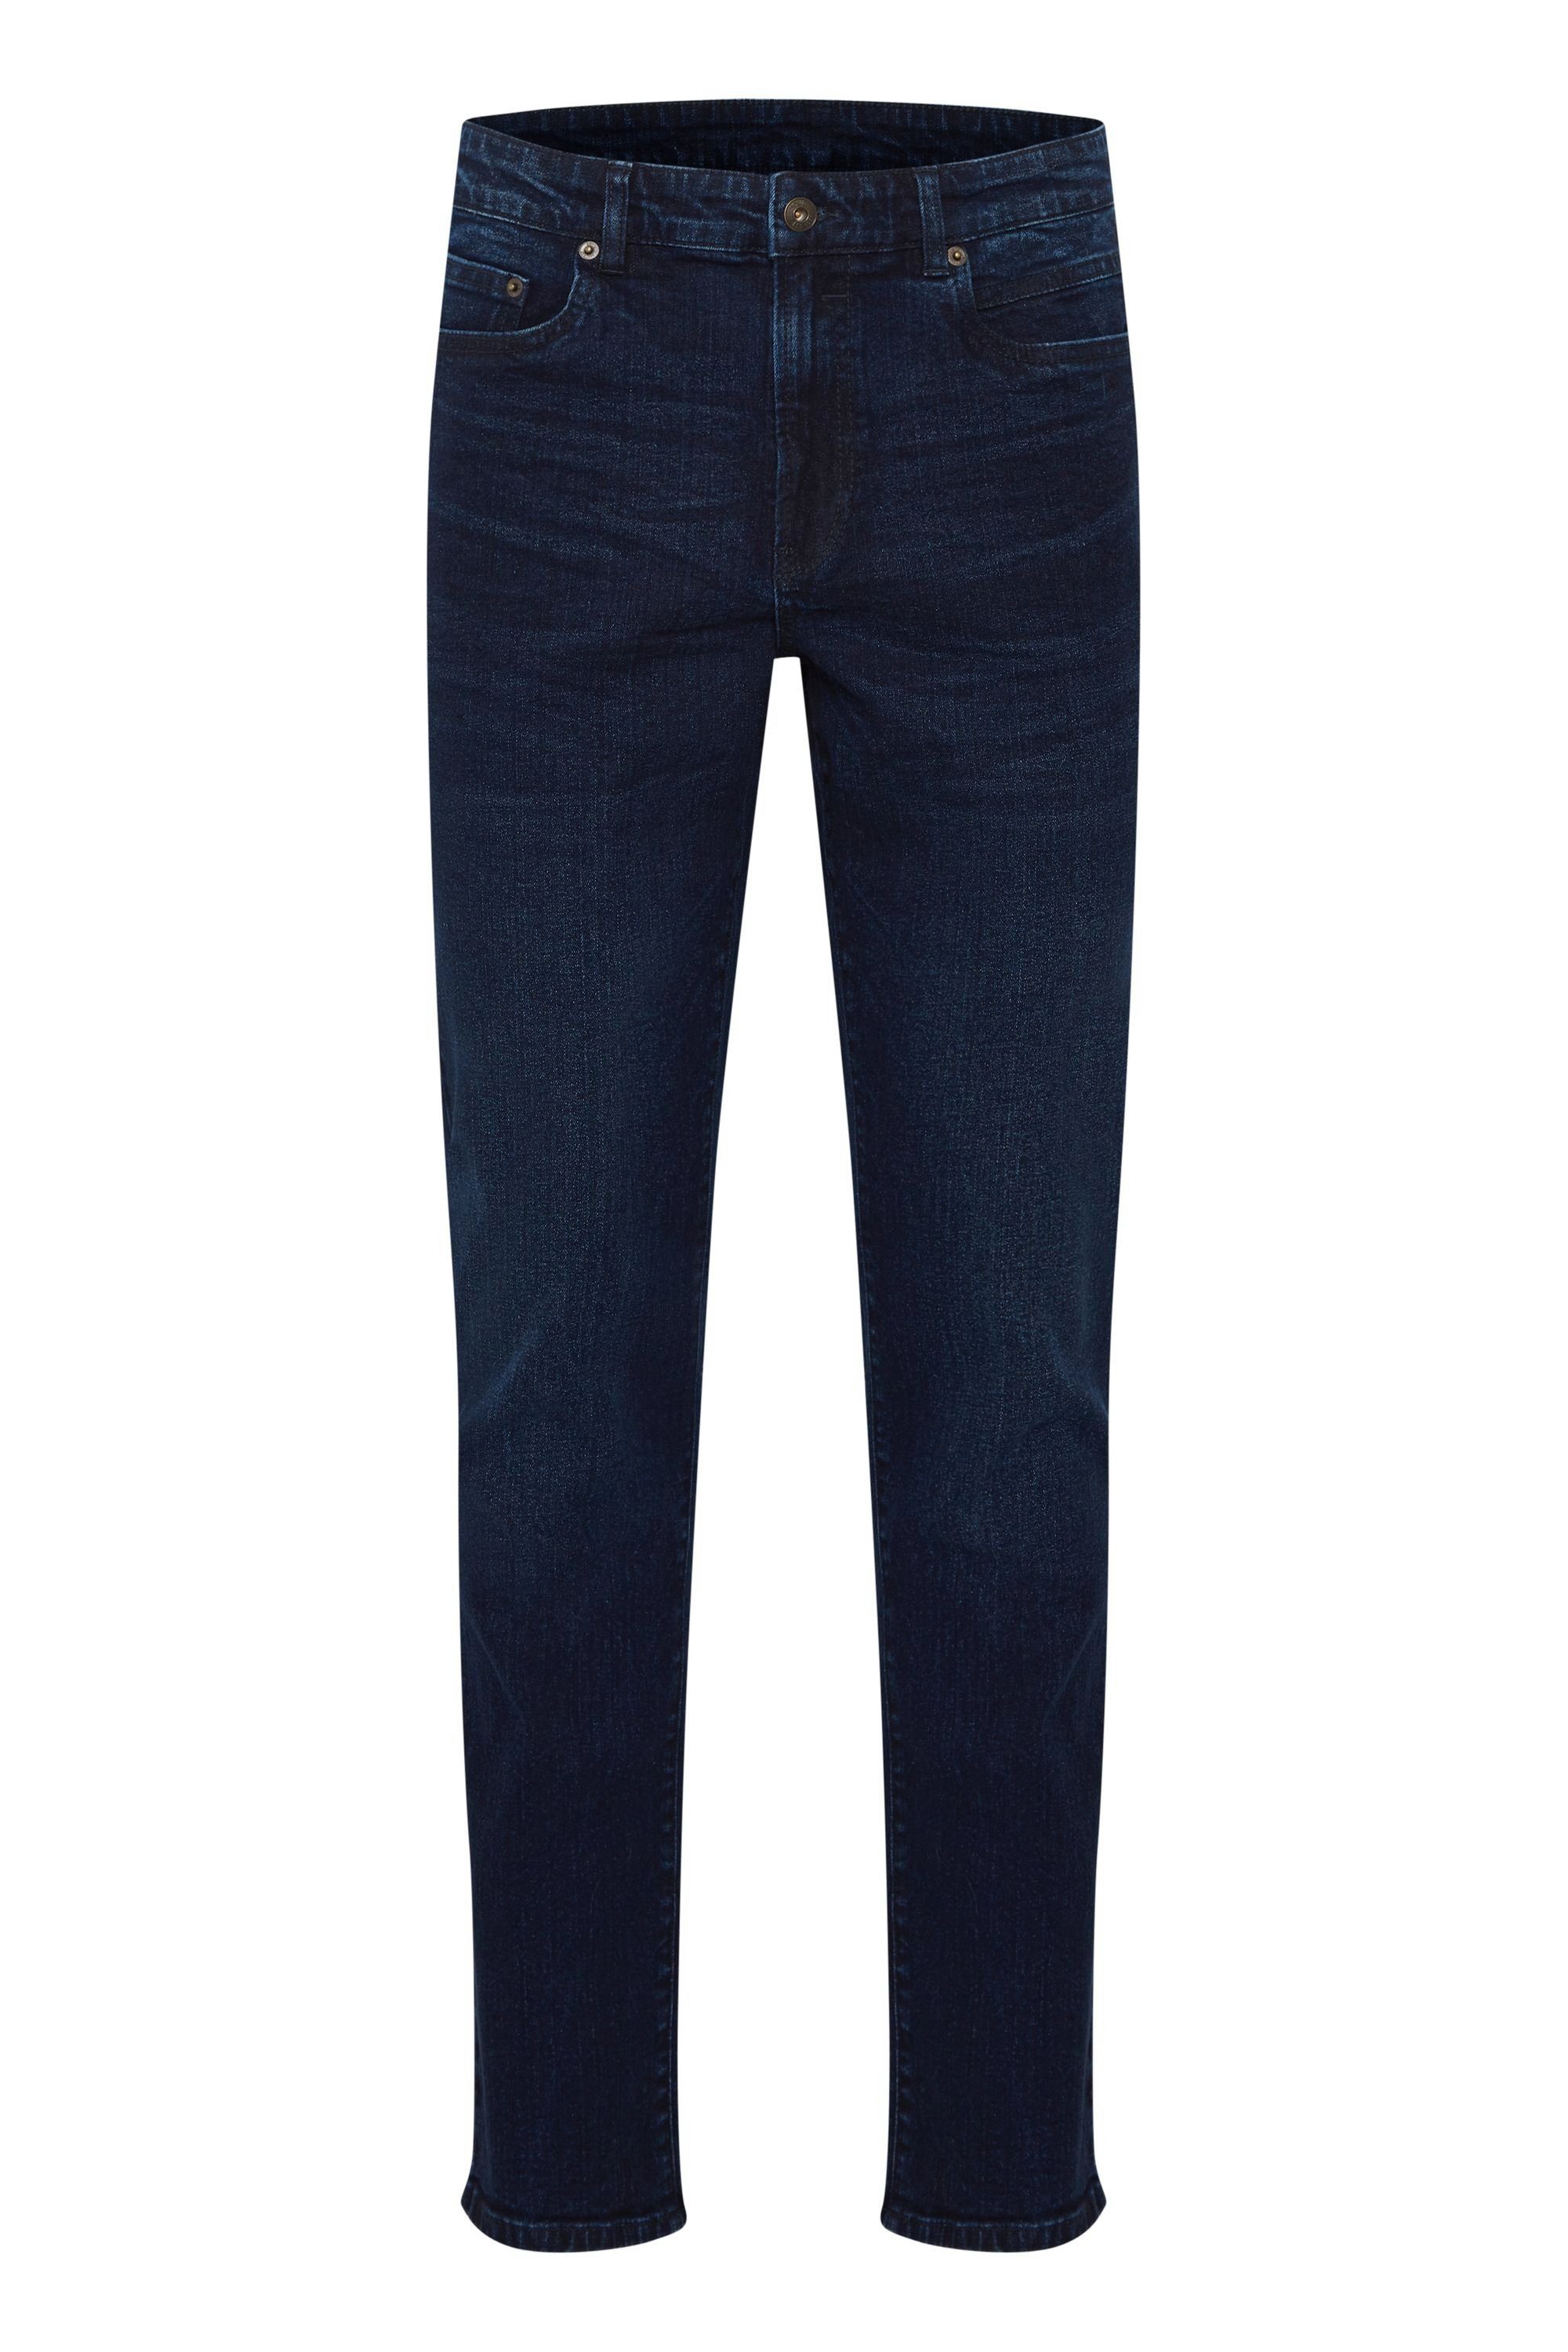 Solid 5-Pocket-Jeans SDRyder Blue 202 Dark blue denim (700031) 21104849 